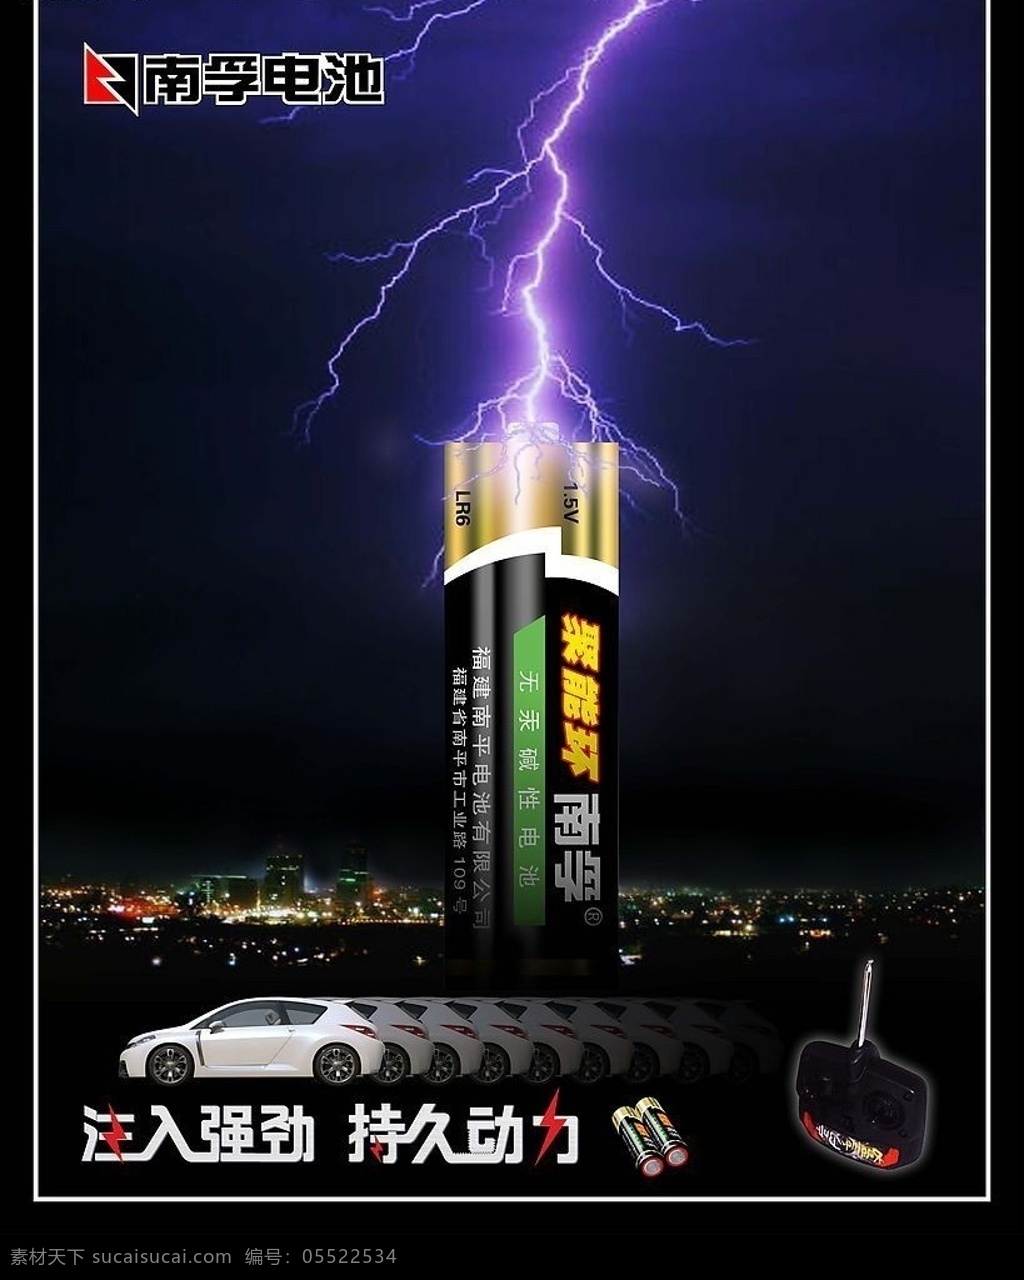 南孚电池 南孚 电池 闪电 强劲 动力 汽车 遥控器 玩具车 夜空 夜景 城市 广告设计模板 源文件库